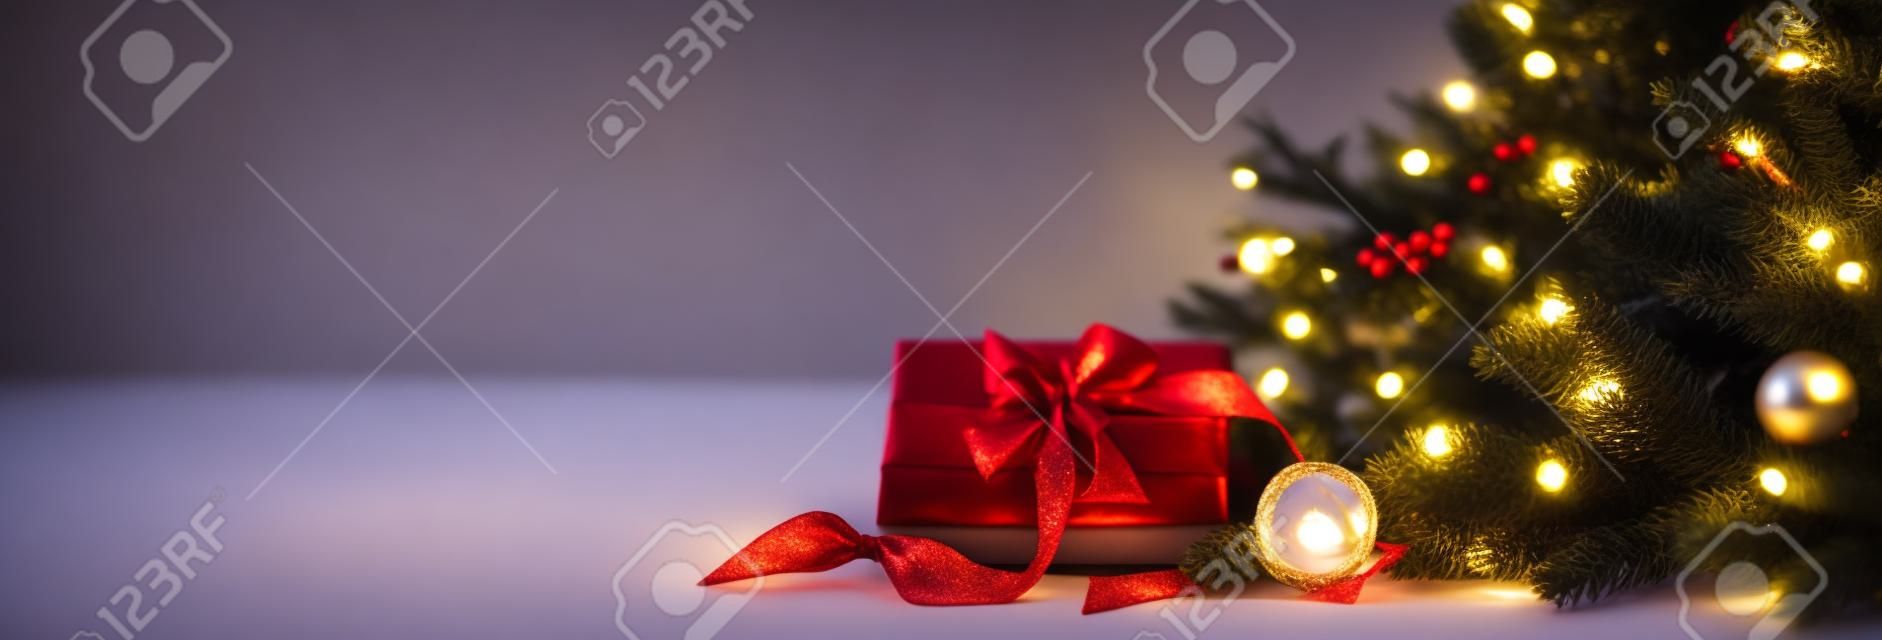 Weihnachtliche Gemütlichkeit in einem Raum auf hellem Hintergrund, mit Lichtern und Zweigen eines Weihnachtsbaums und einem Geschenk mit roter Schleife auf dem Tisch, Platz für Text